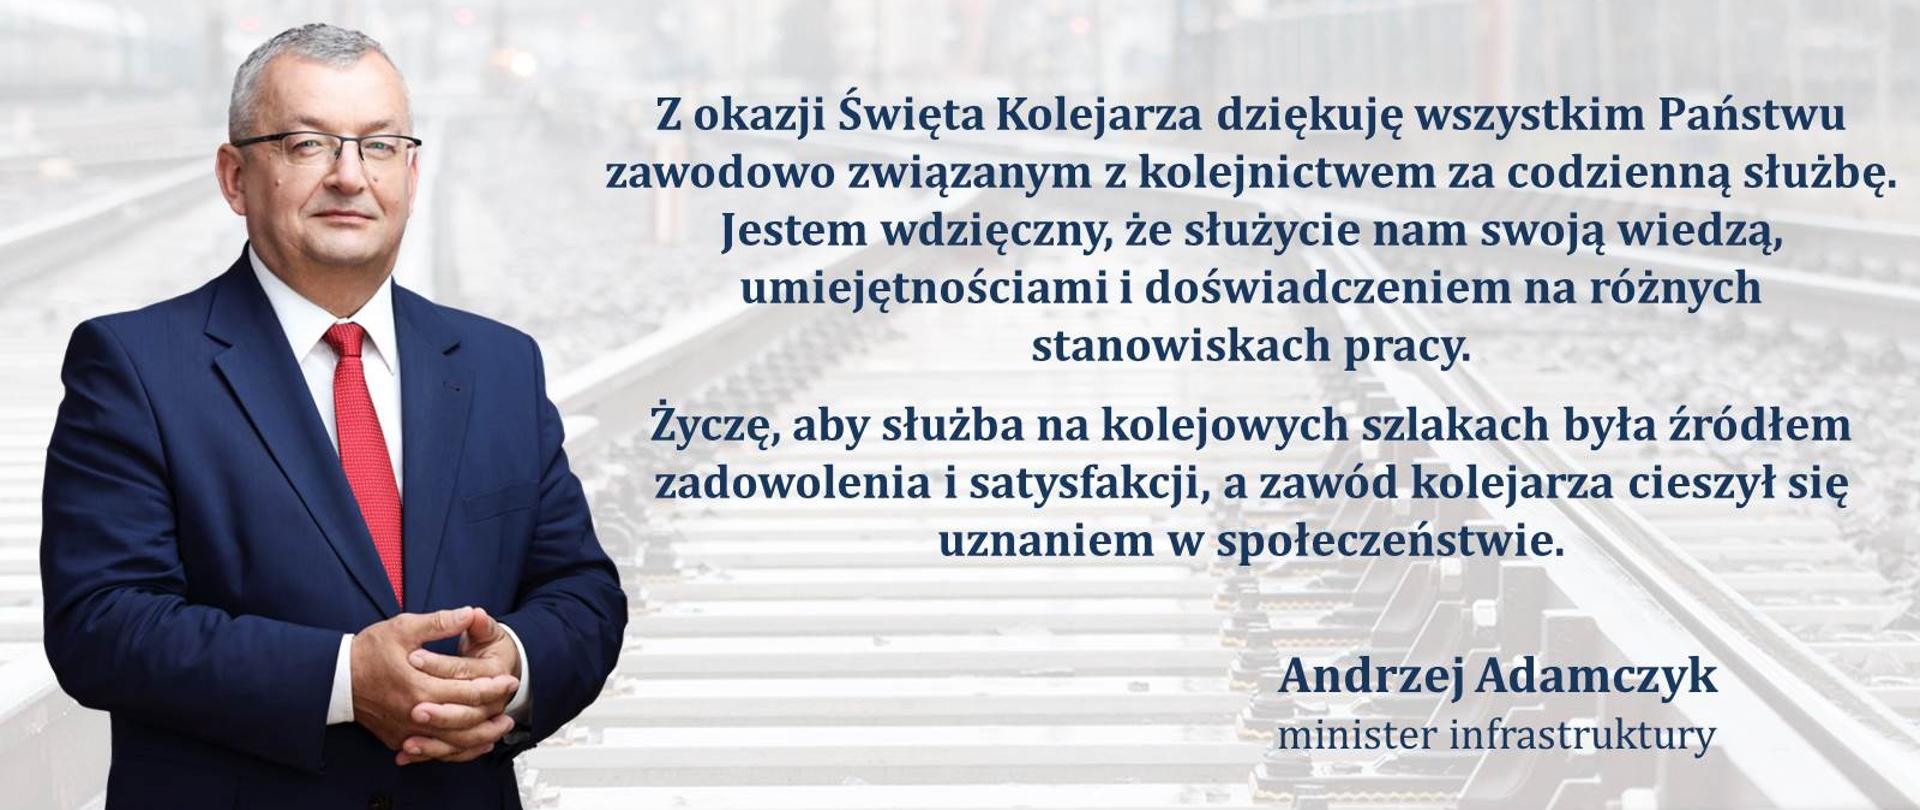 Życzenia ministra infrastruktury Andrzeja Adamczyka z okazji Święta Kolejarza